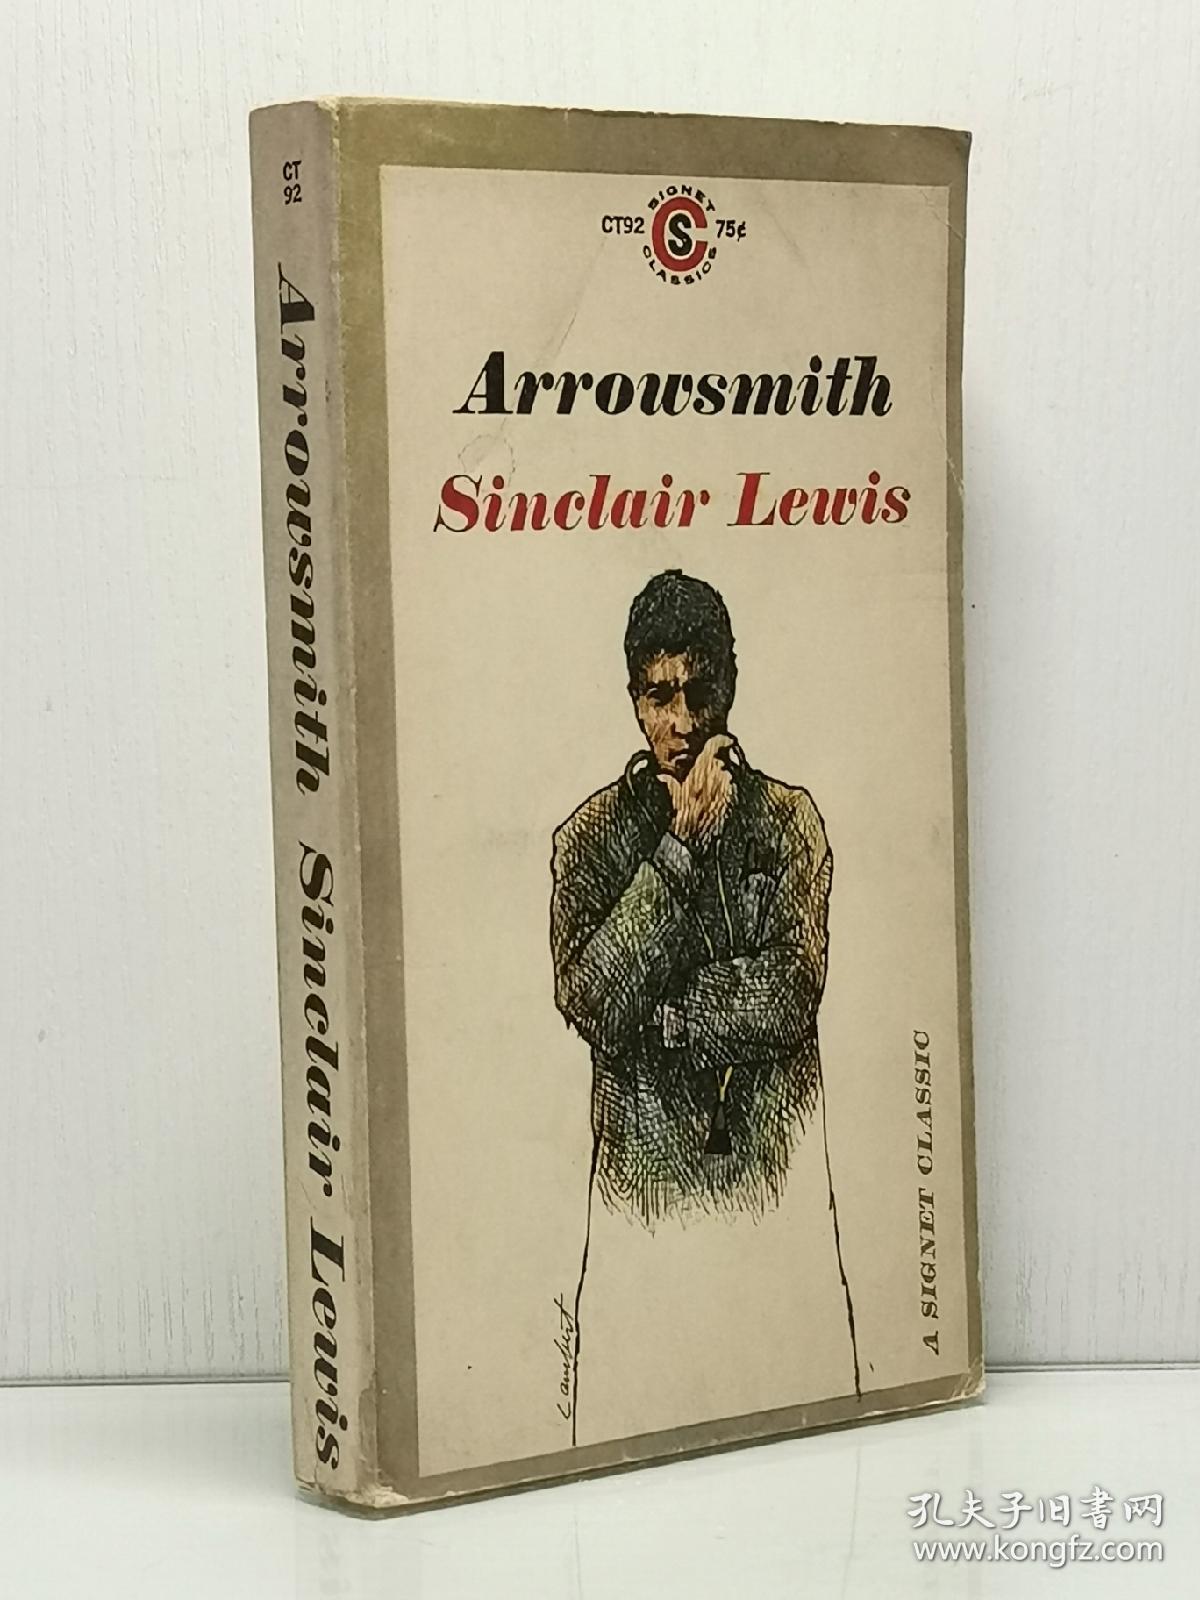 辛克莱·刘易斯 《阿罗史密斯》 Arrowsmith by Sinclair Lewis   [ A Signet Classic 1961年版 ]（美国文学）英文原版书